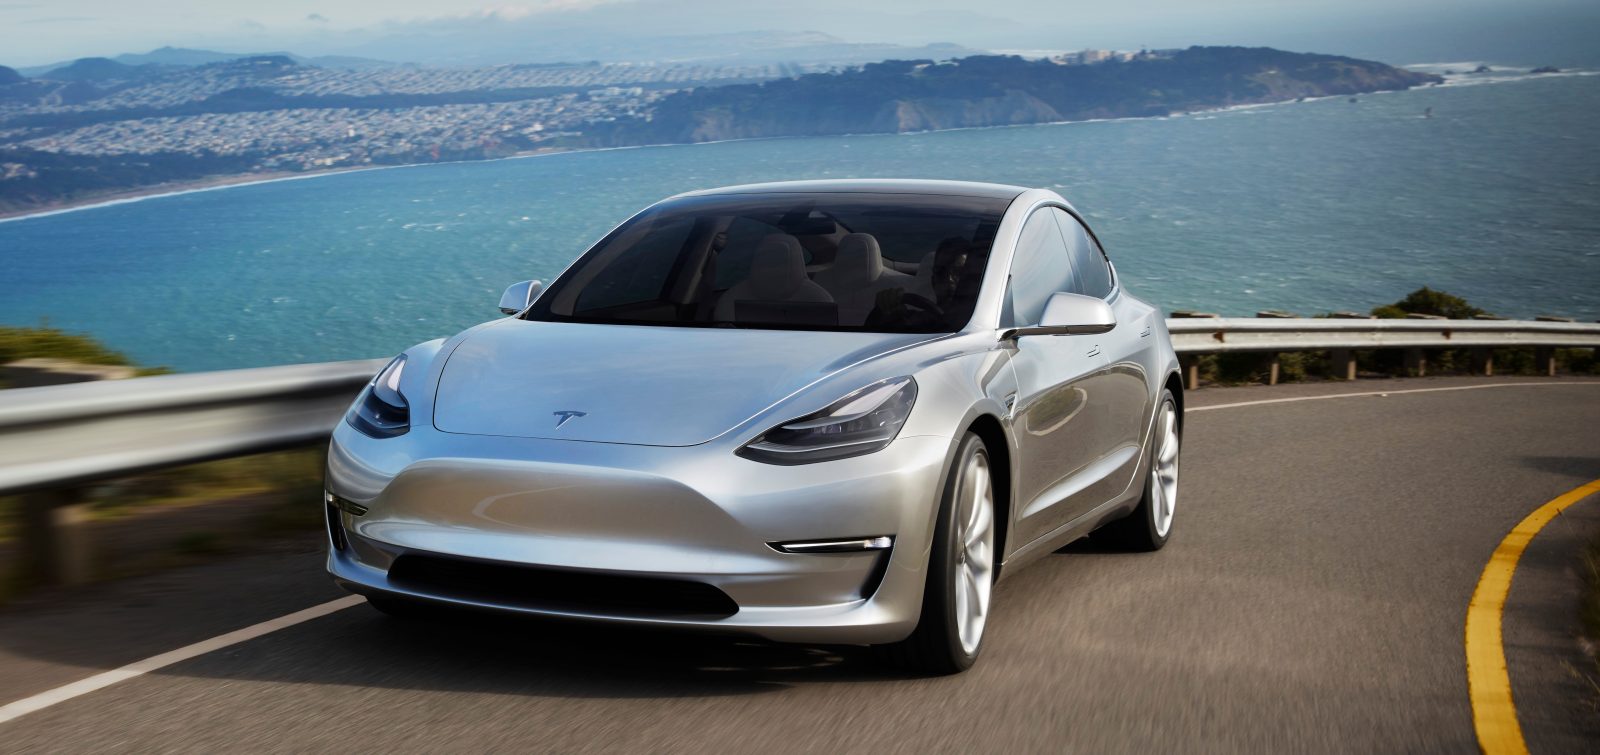 Tesla Model 3 กลายเป็นรถขายดีอันดับ 1 ในอังกฤษ ด้วยจำนวนแค่หลักร้อย- รถเช่าดีดี